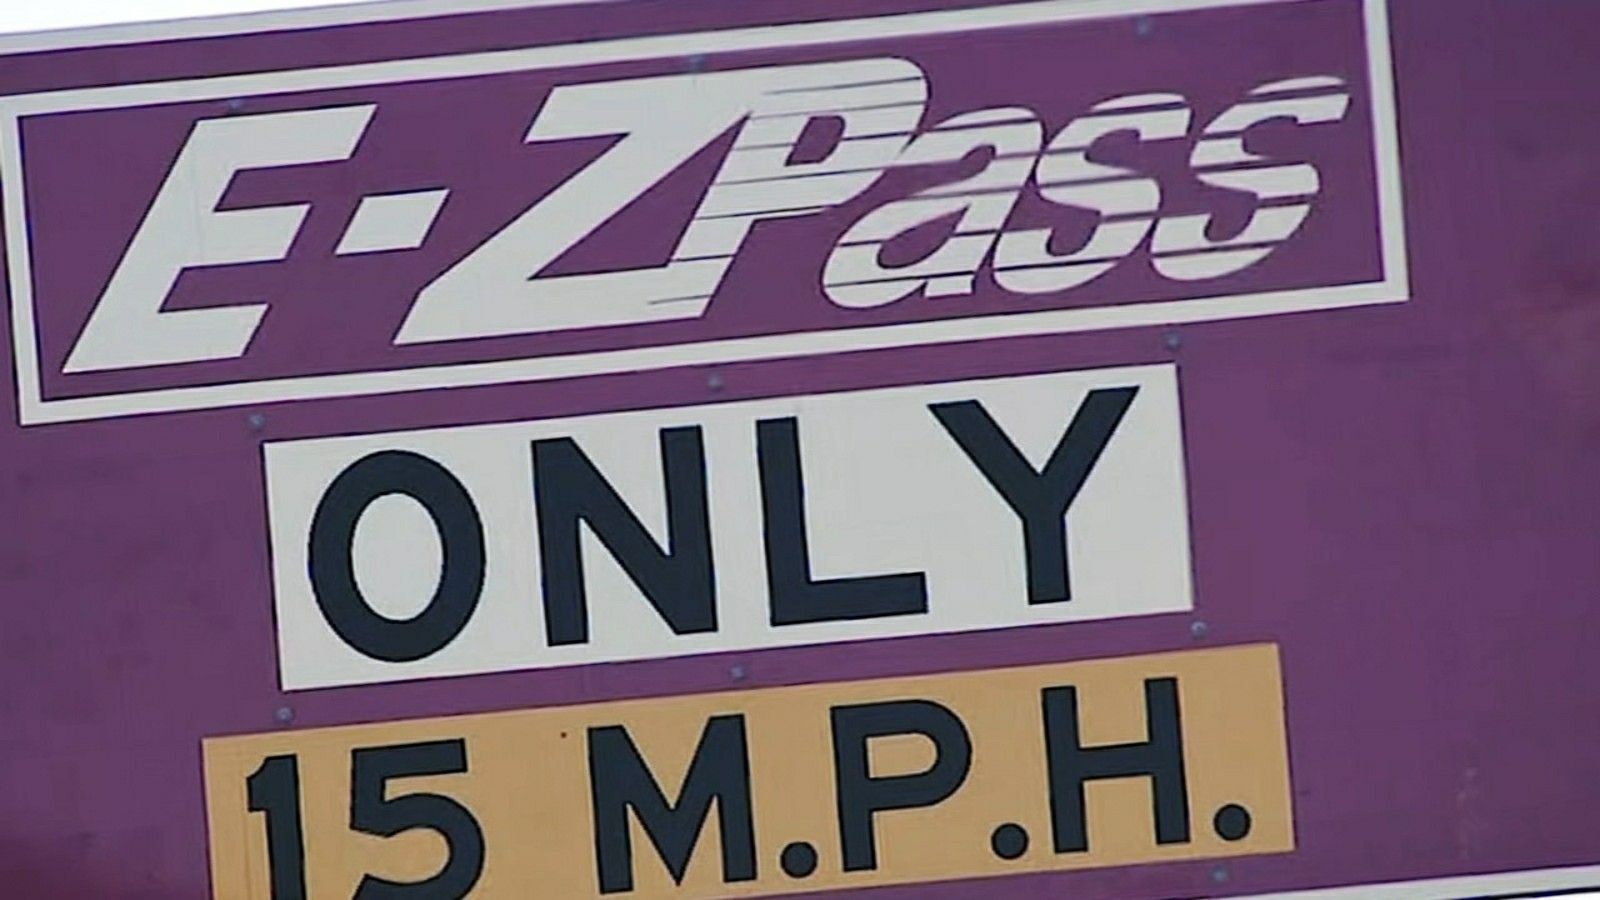 Ezpass or parking tickets